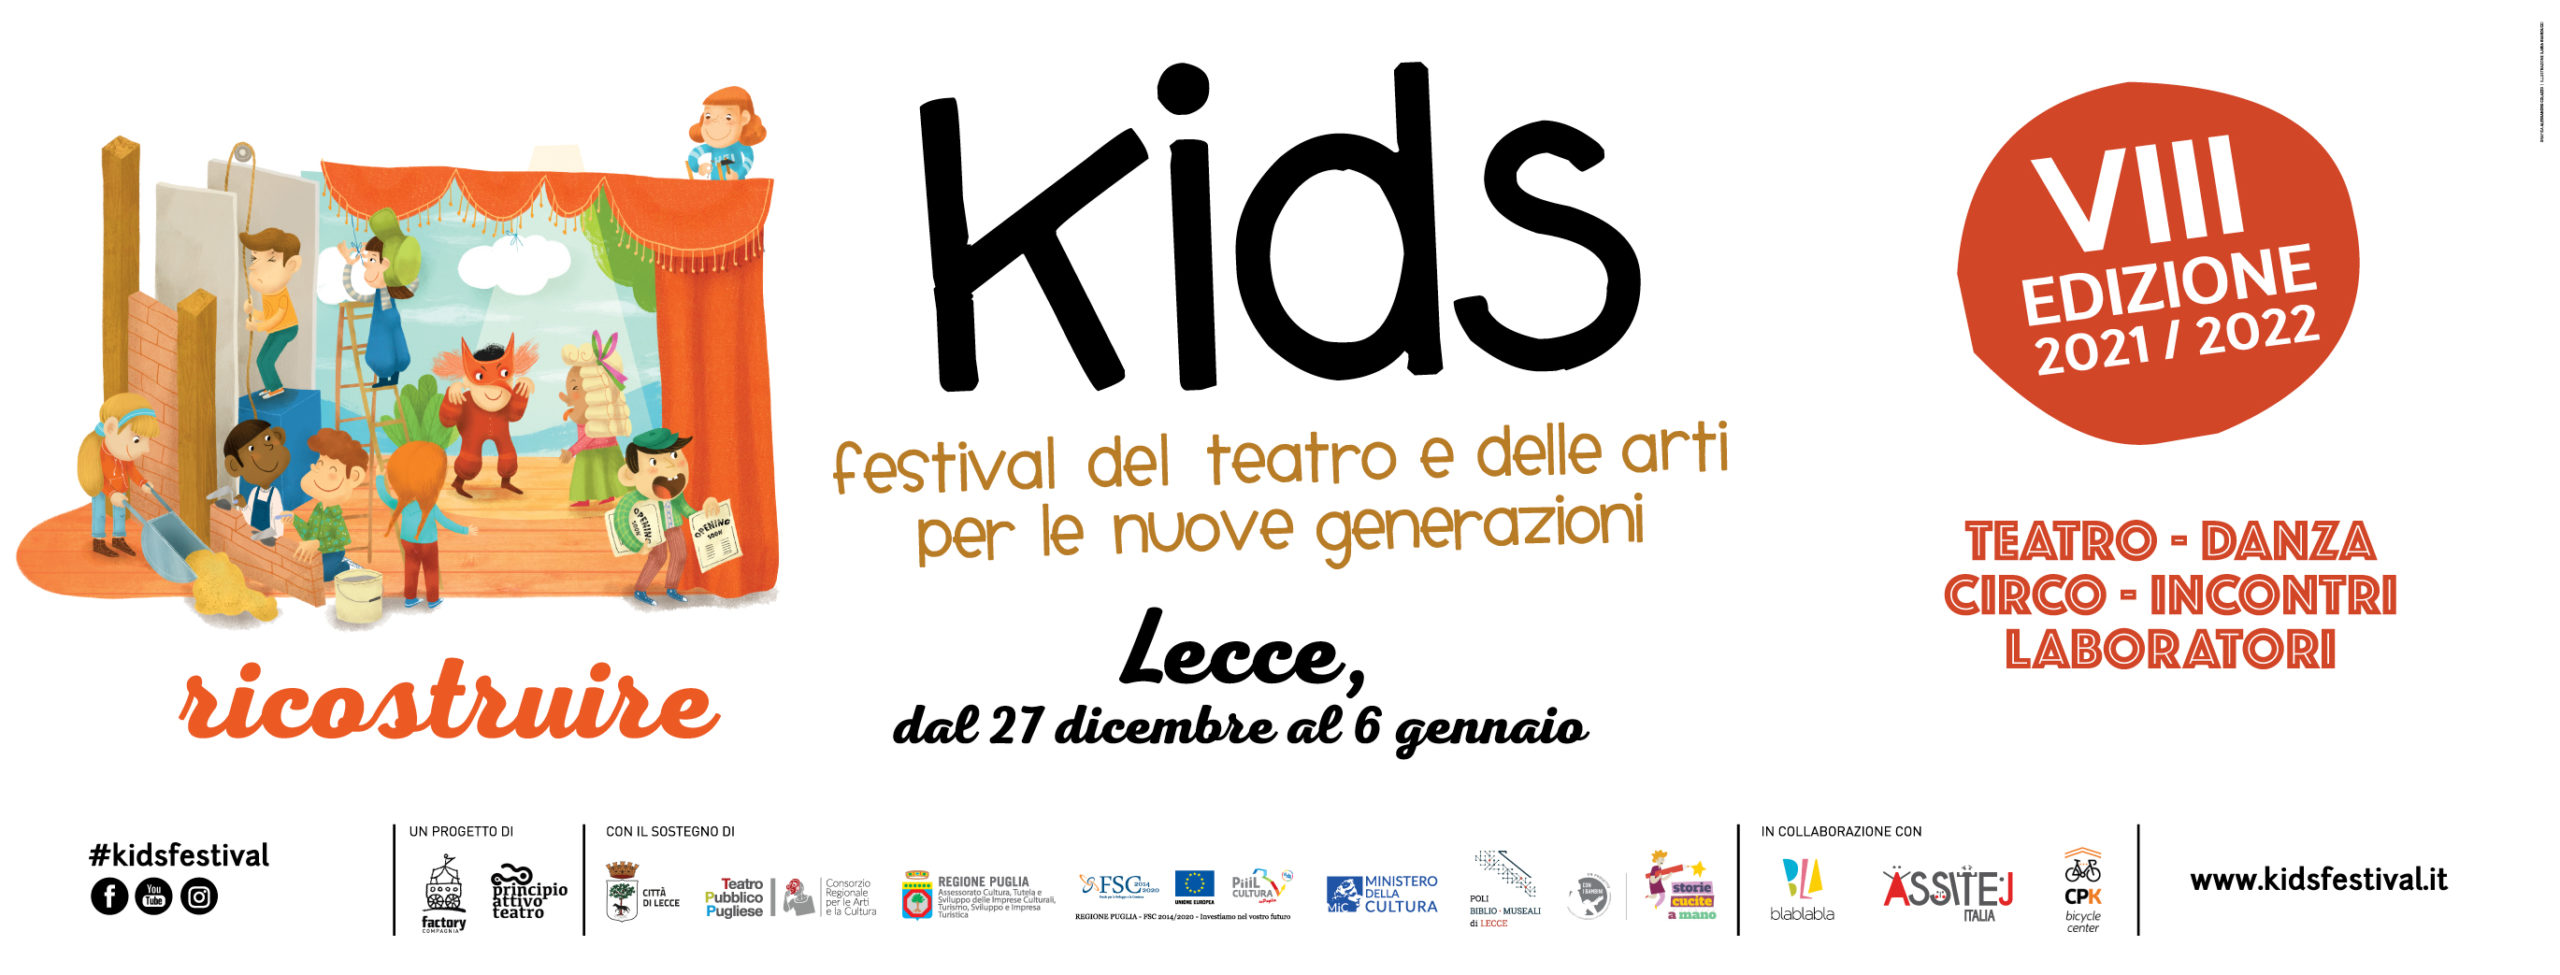 Kids - Festival del teatro e delle arti per le nuove generazioni